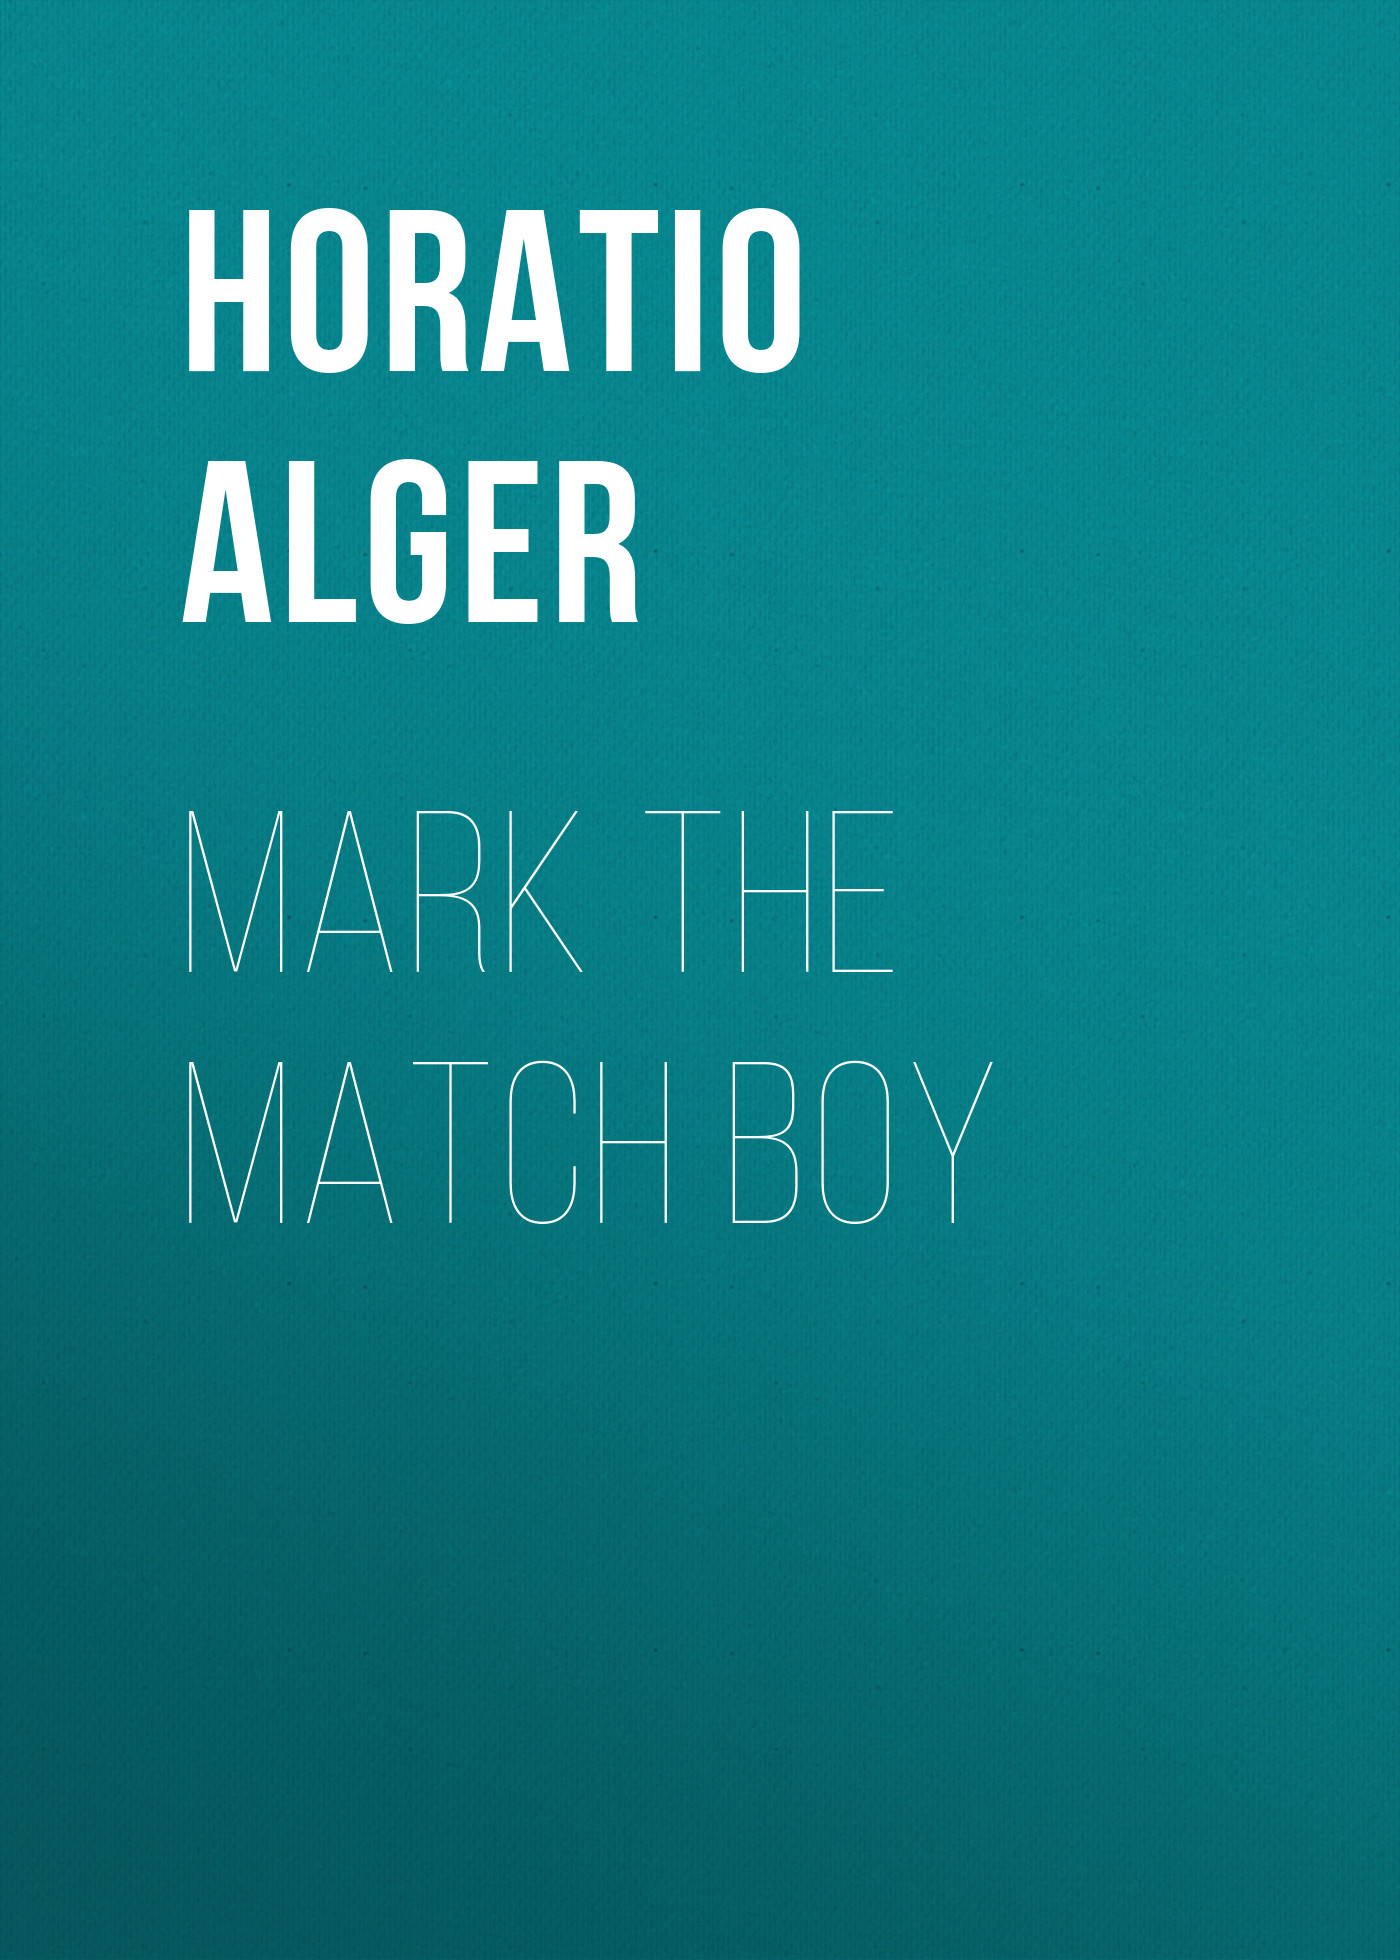 Книга Mark the Match Boy из серии , созданная Horatio Alger, может относится к жанру Иностранные языки, Зарубежная классика. Стоимость электронной книги Mark the Match Boy с идентификатором 23171755 составляет 5.99 руб.